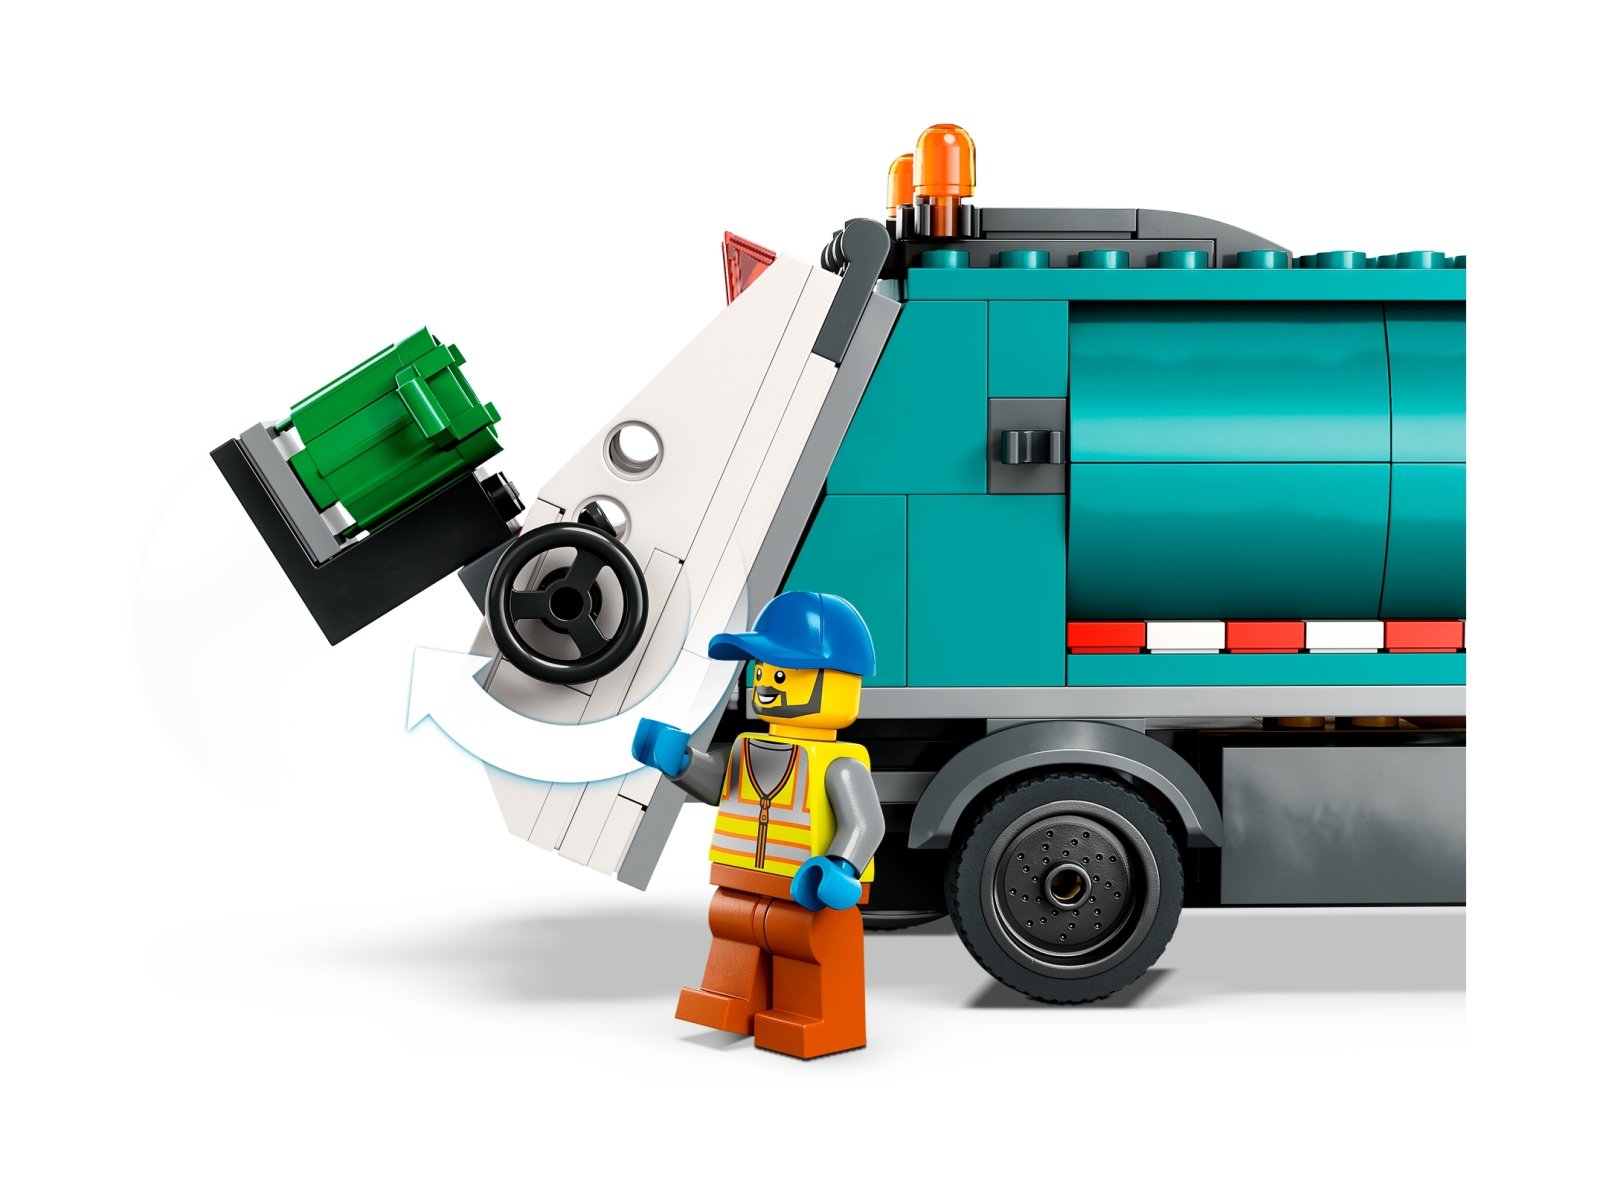 LEGO 60386 Ciężarówka recyklingowa